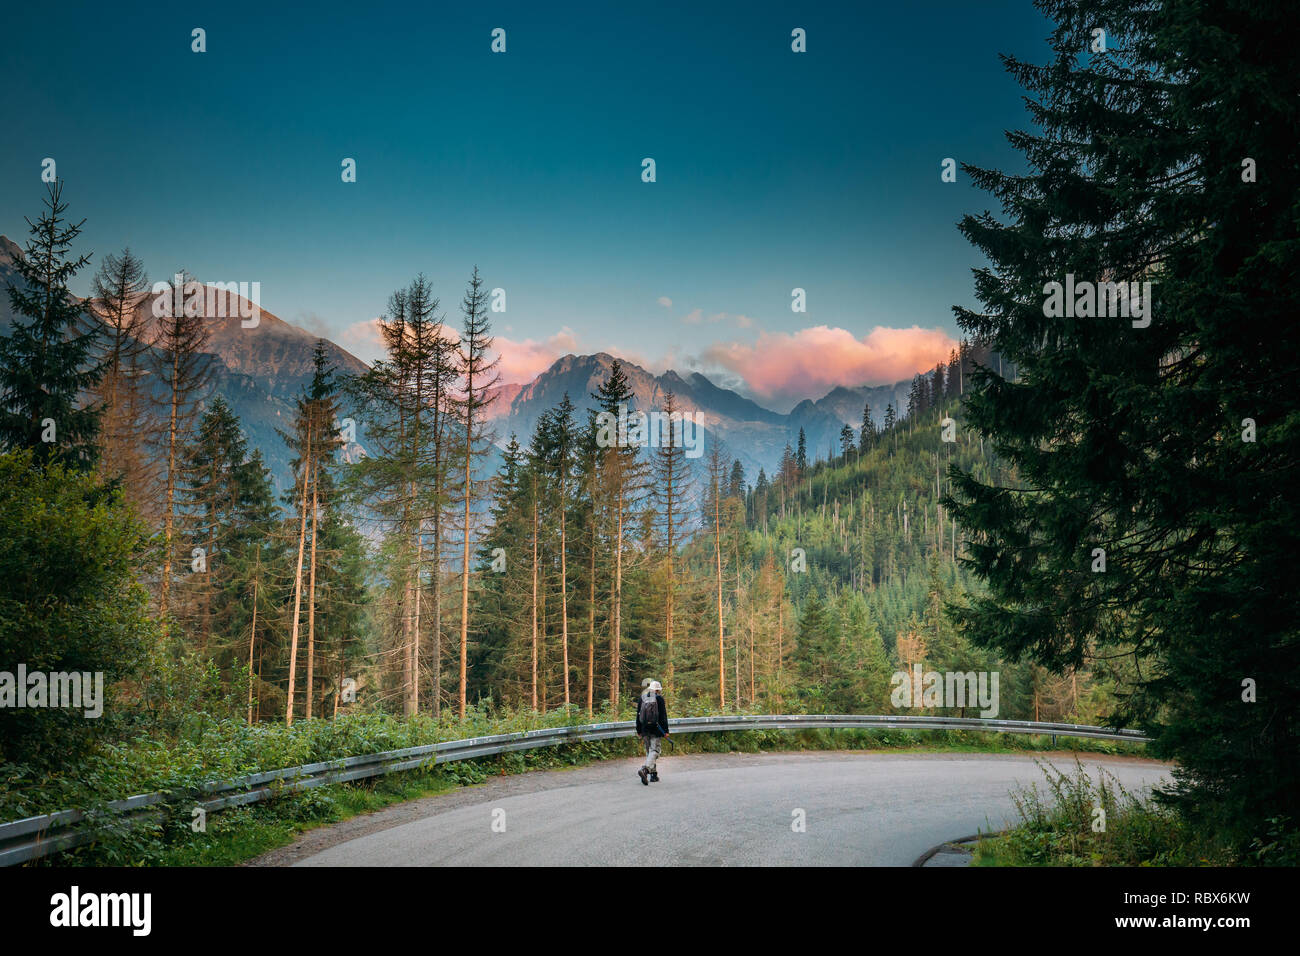 Parco nazionale dei Alti Tatra, Polonia - 29 agosto 2018: Turistica la gente camminare sulla strada In estate nei monti Tatra paesaggio forestale. Bella vista panoramica di Sun Foto Stock